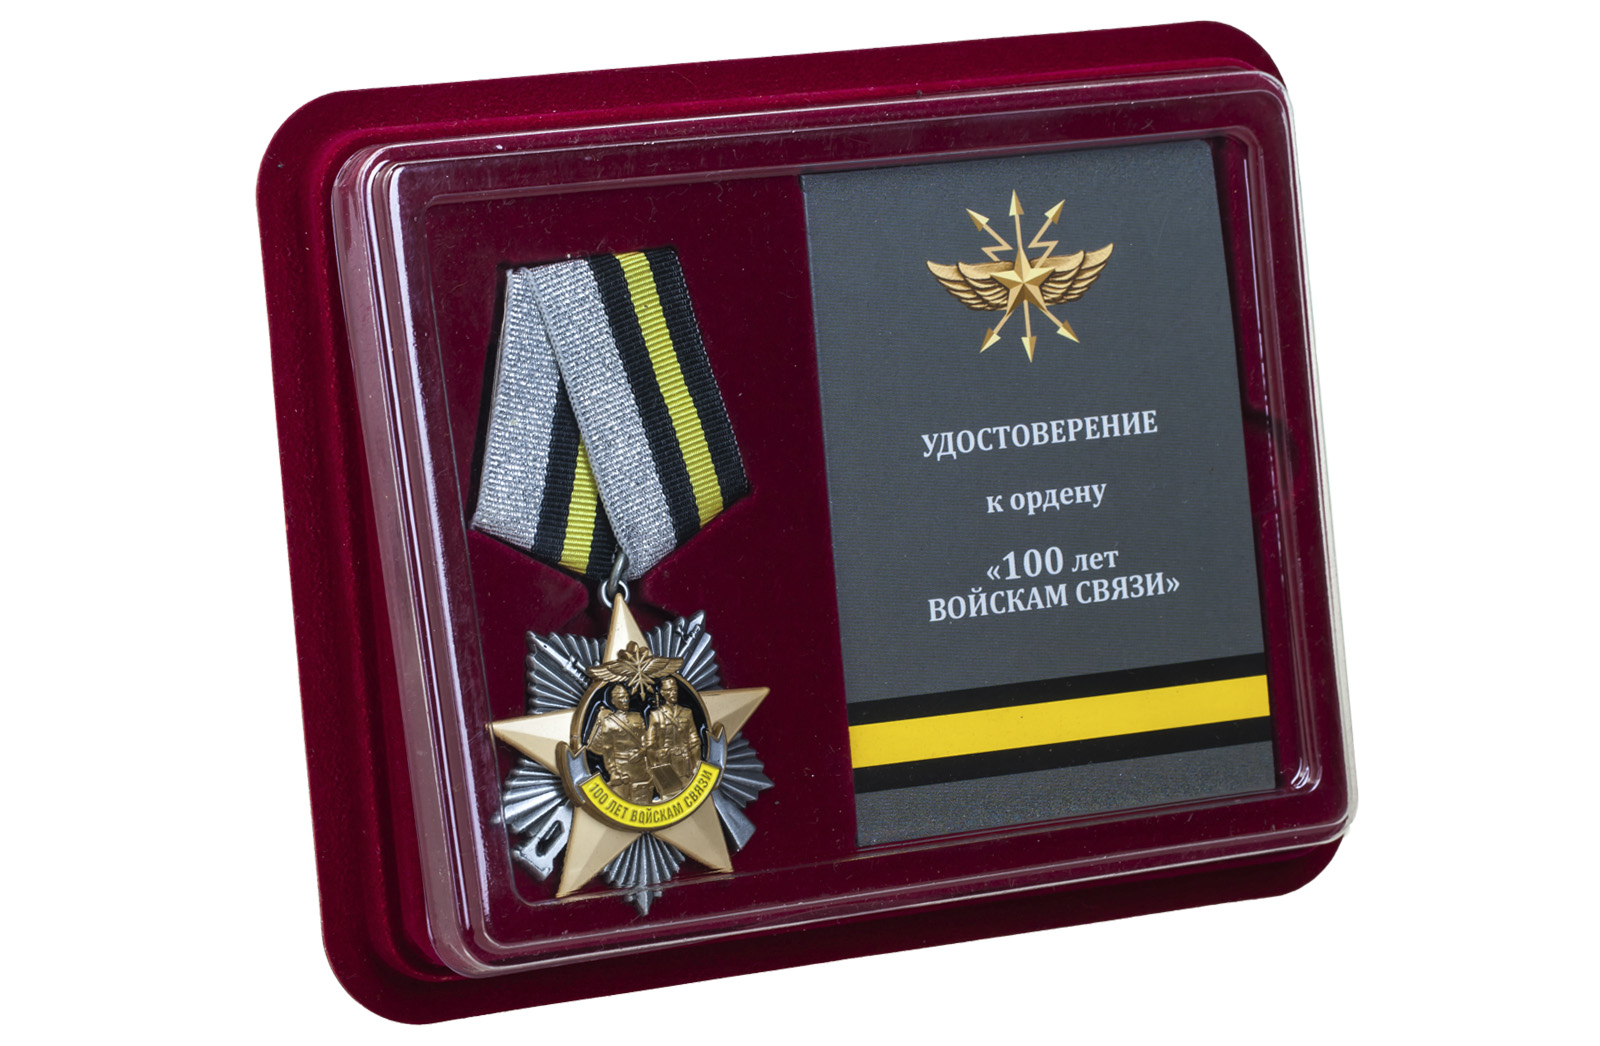 Юбилейный орден "100 лет Войскам связи" на колодке 